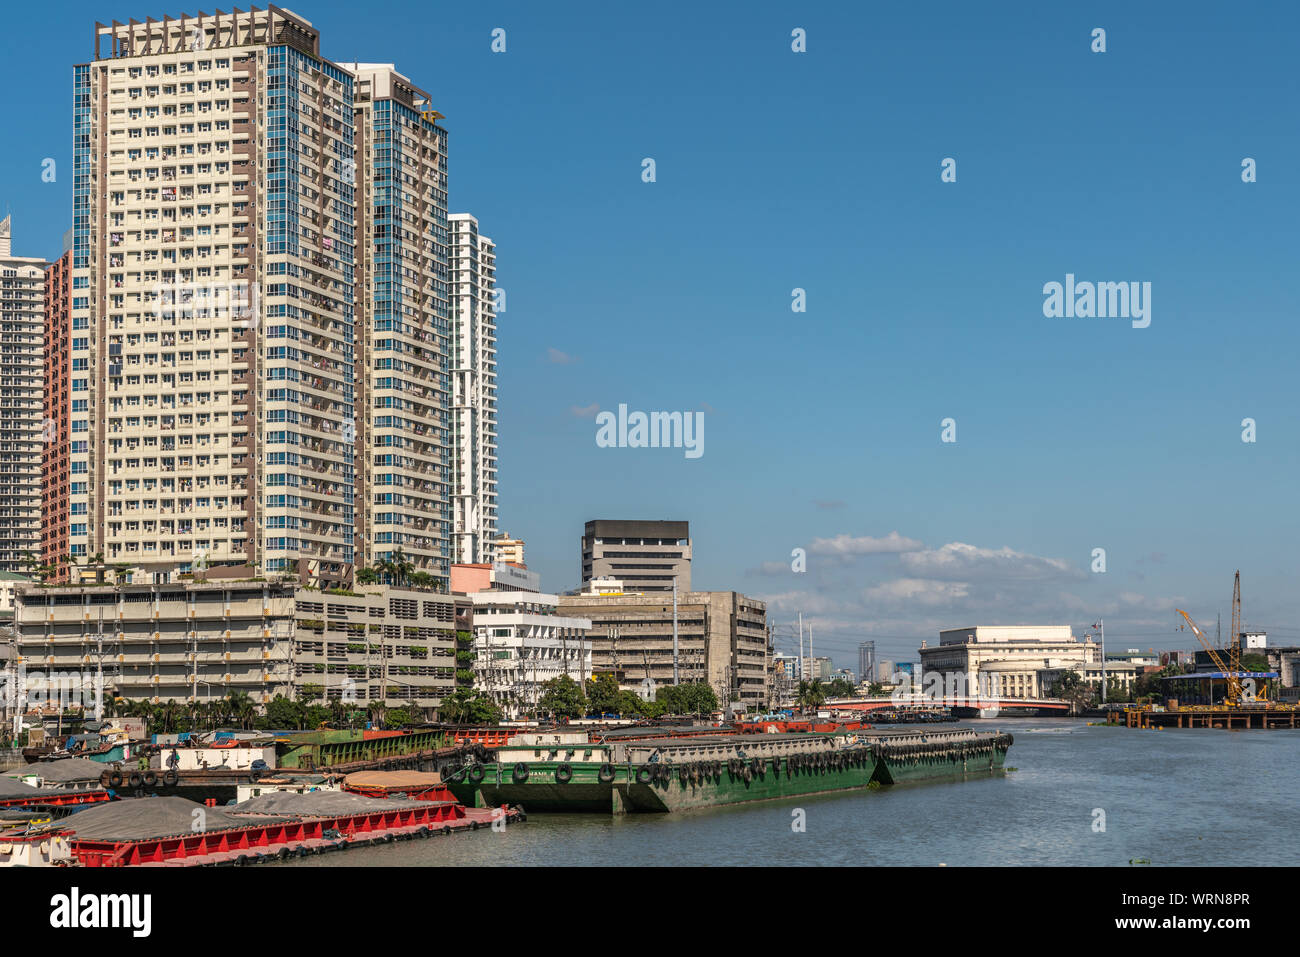 Manille, Philippines - mars 5, 2019 : l'extérieur de Fort Santiago. Les chalands et gratte-ciel vacances édifices le long de la rivière Pasig sous ciel bleu. Posta centrale Banque D'Images